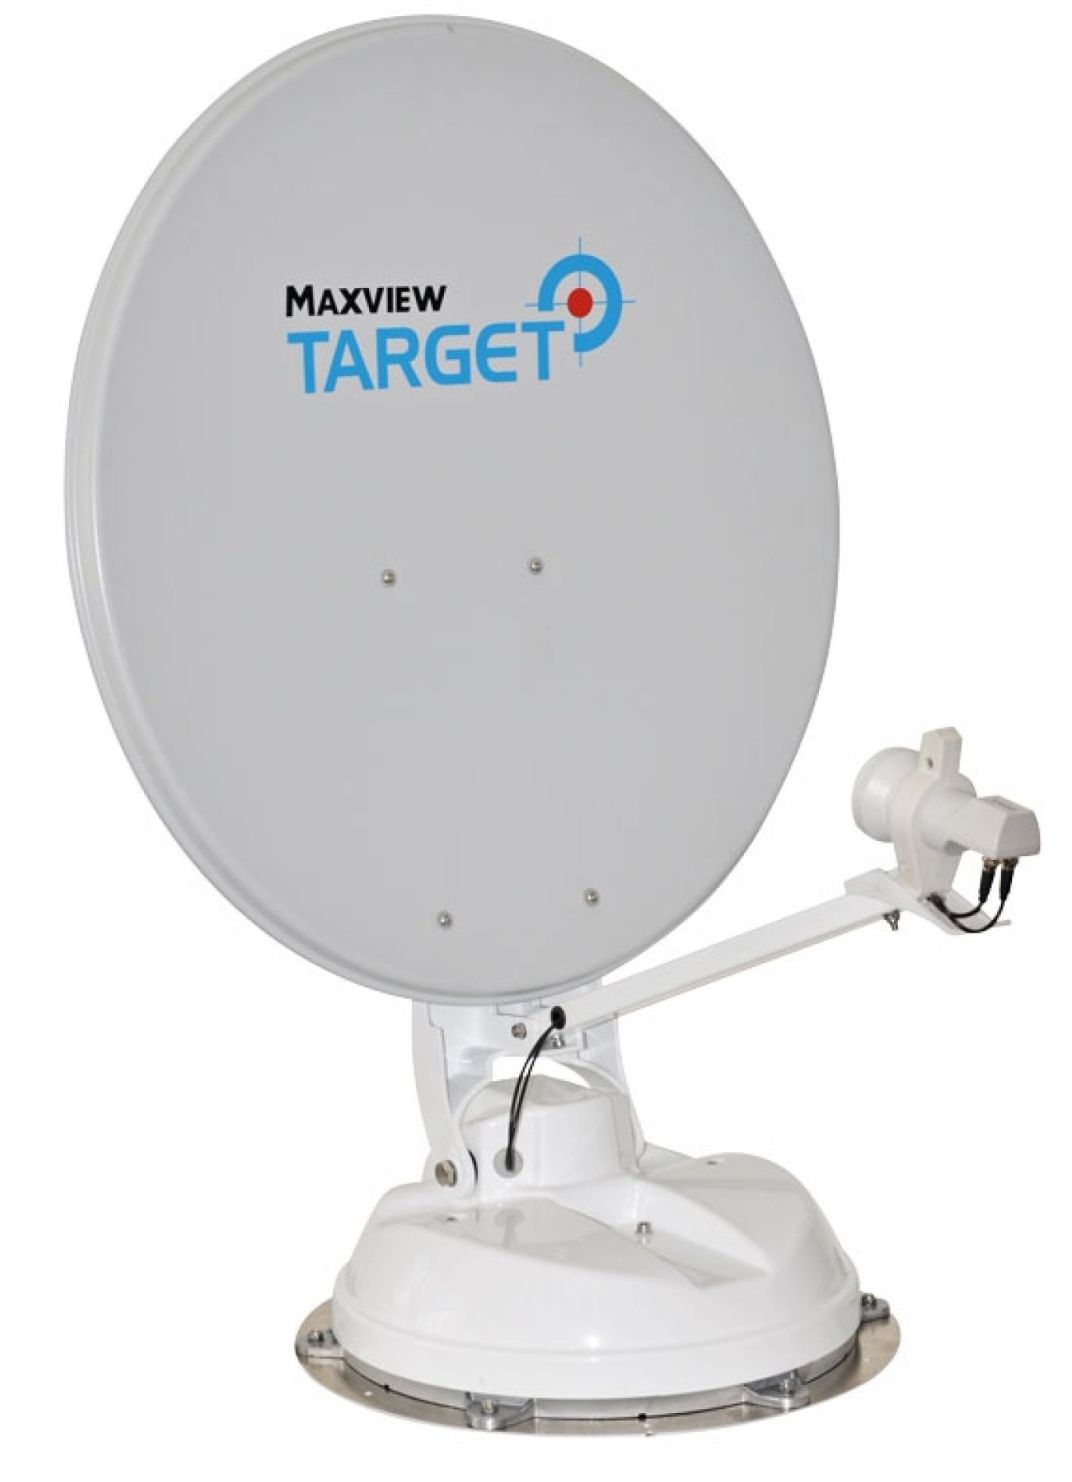 Maxview Target Connect vollautomatische Sat-Anlage inkl. Steuereinheit Twin-LNB 50 cm